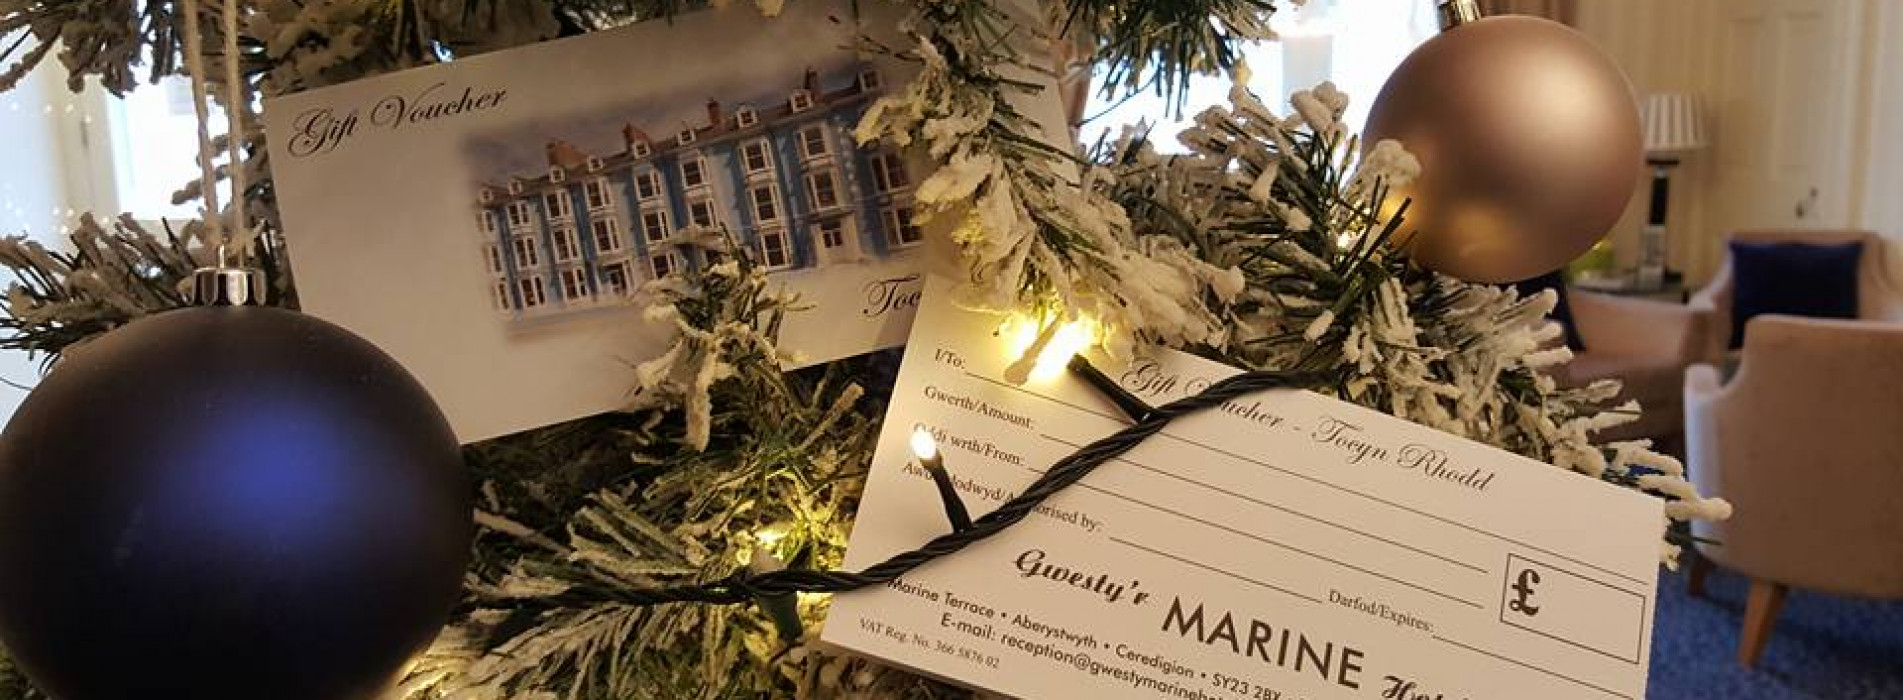 Gwesty'r Marine Hotel Christmas